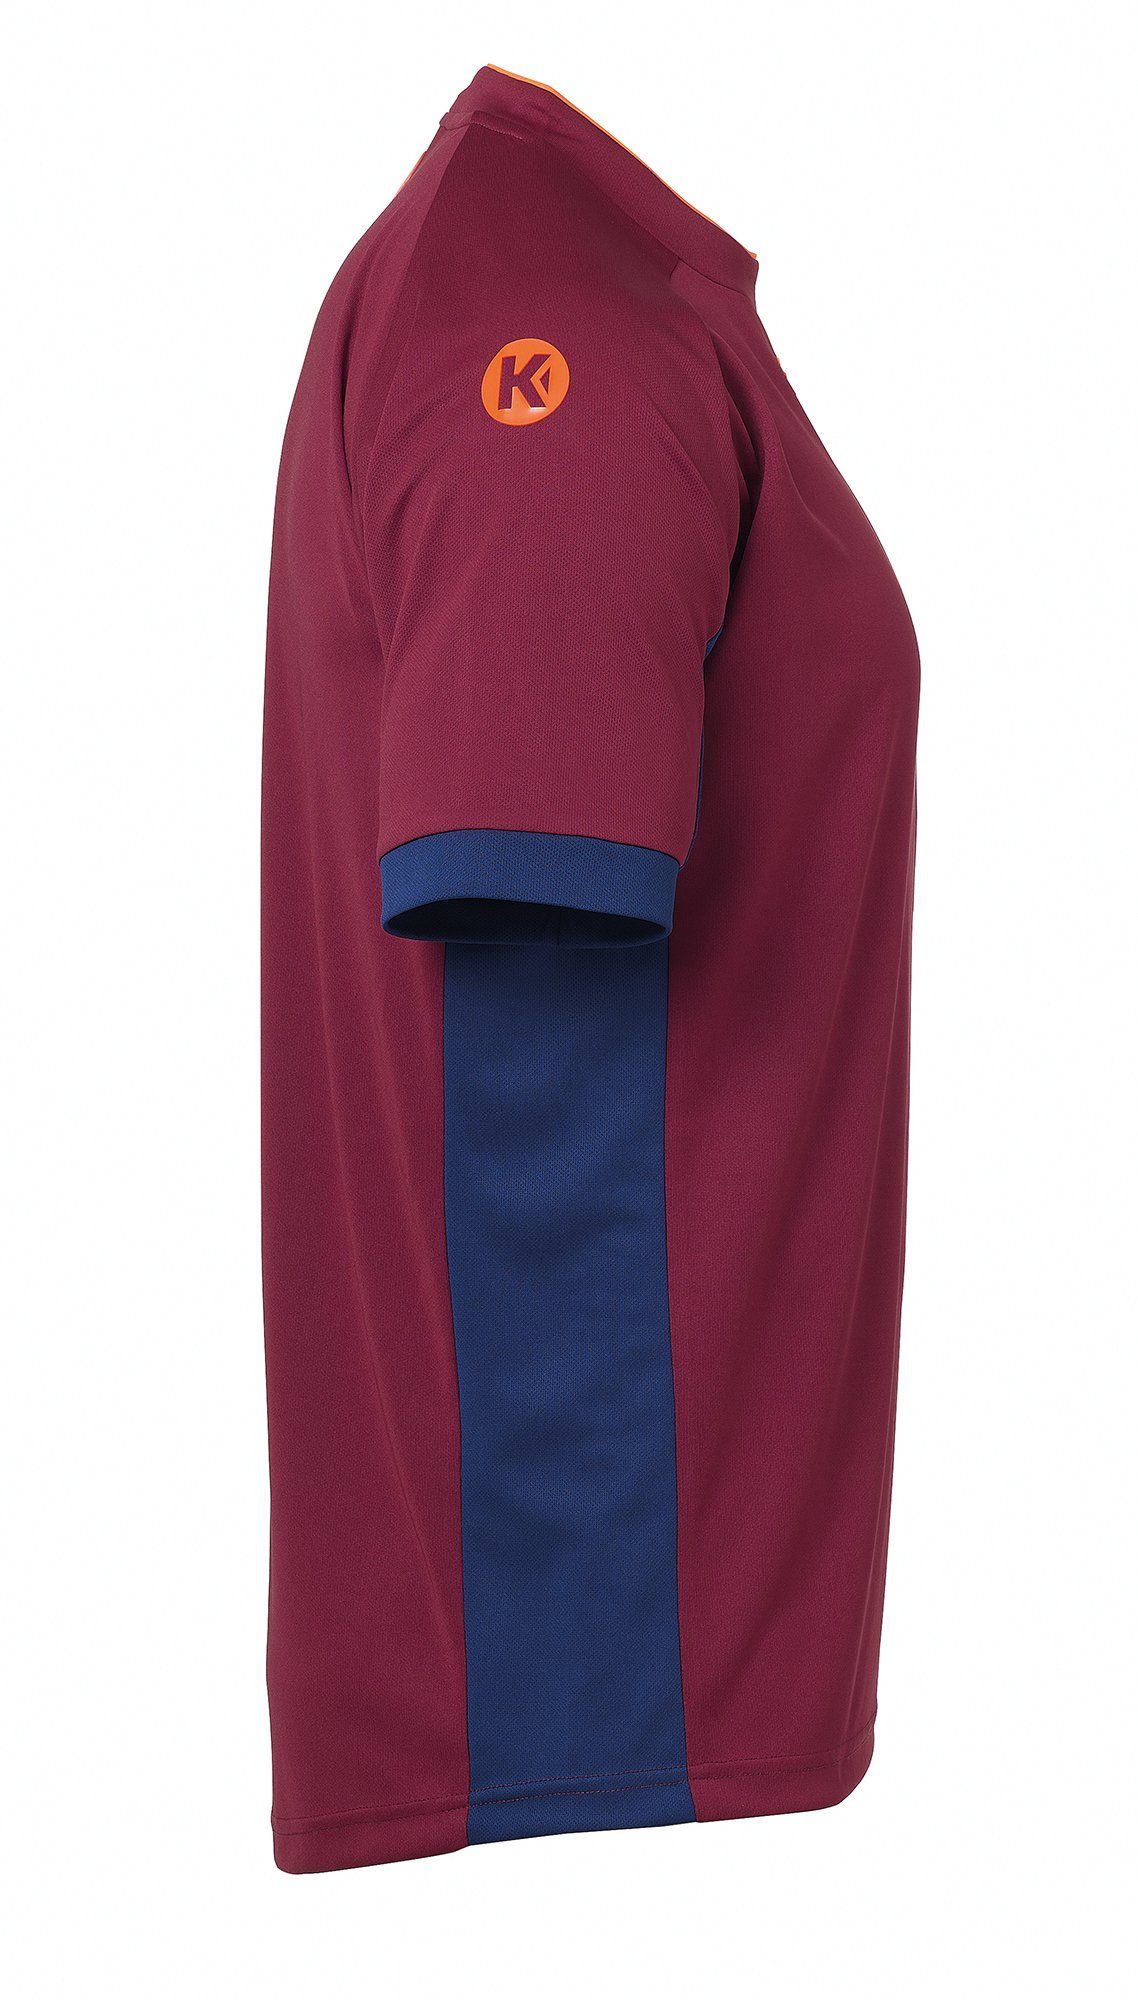 Kempa Trainingsshirt Kempa Shirt deep blau/deep TRIKOT schnelltrocknend PRIME rot